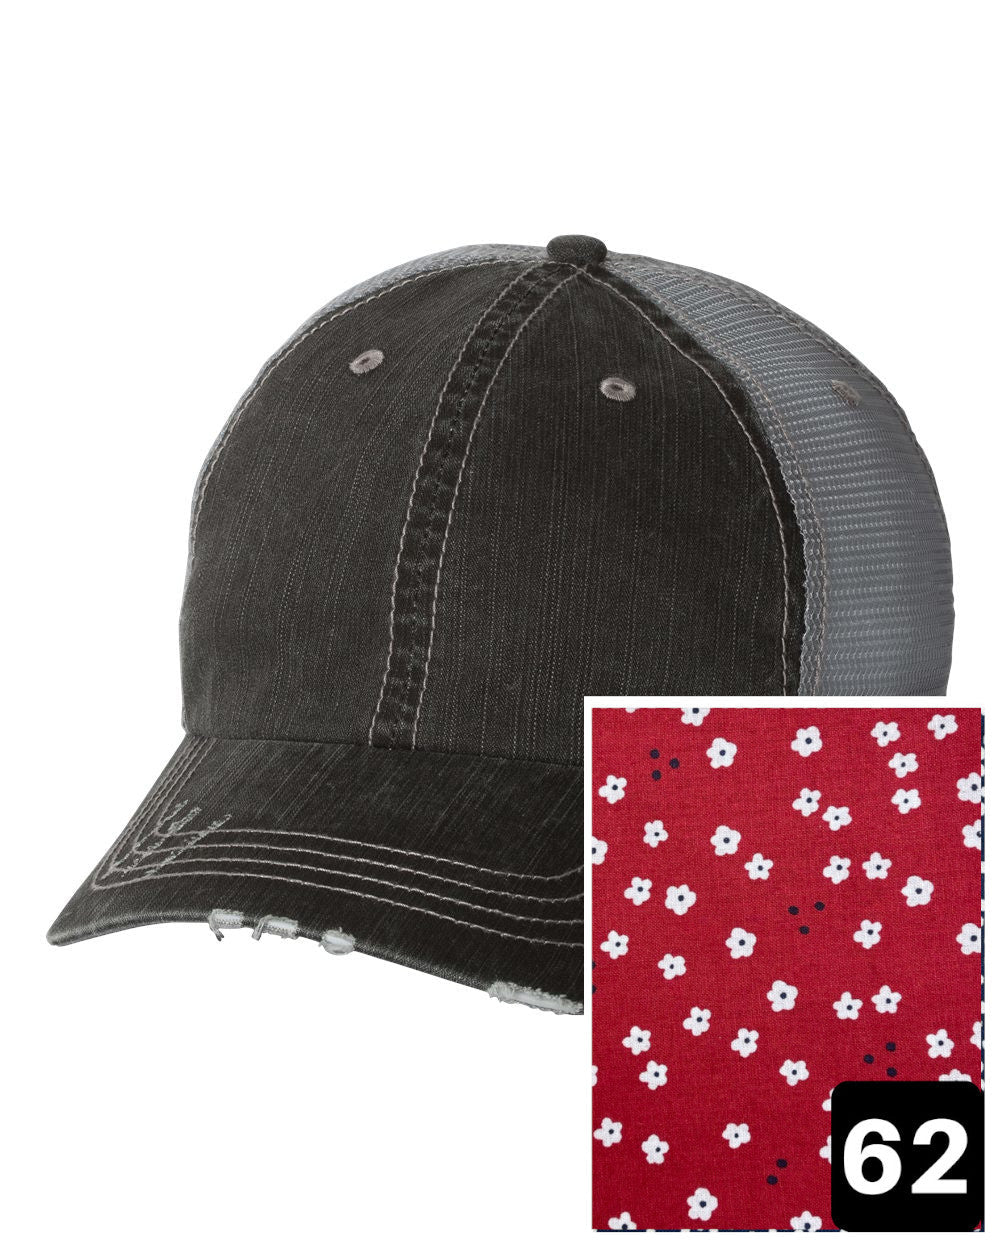 Oklahoma Hat | Gray Distressed Trucker Cap | Many Fabric Choices